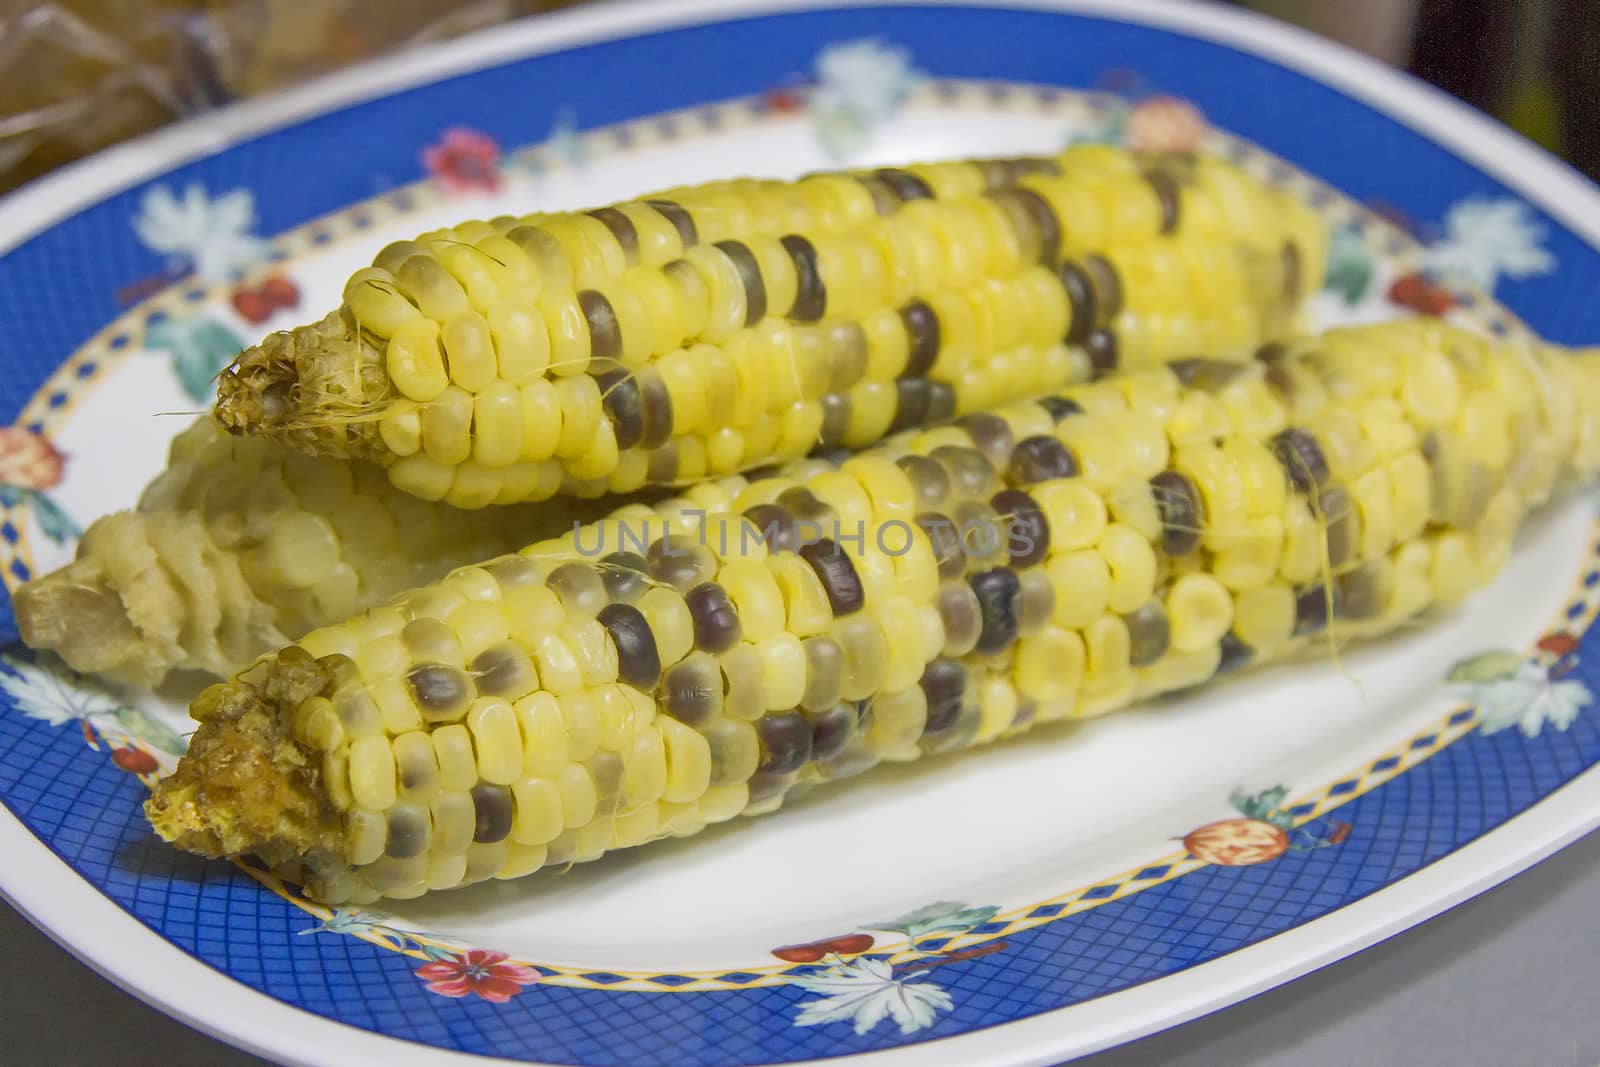 Corn boiled in a plate by TakerWalker